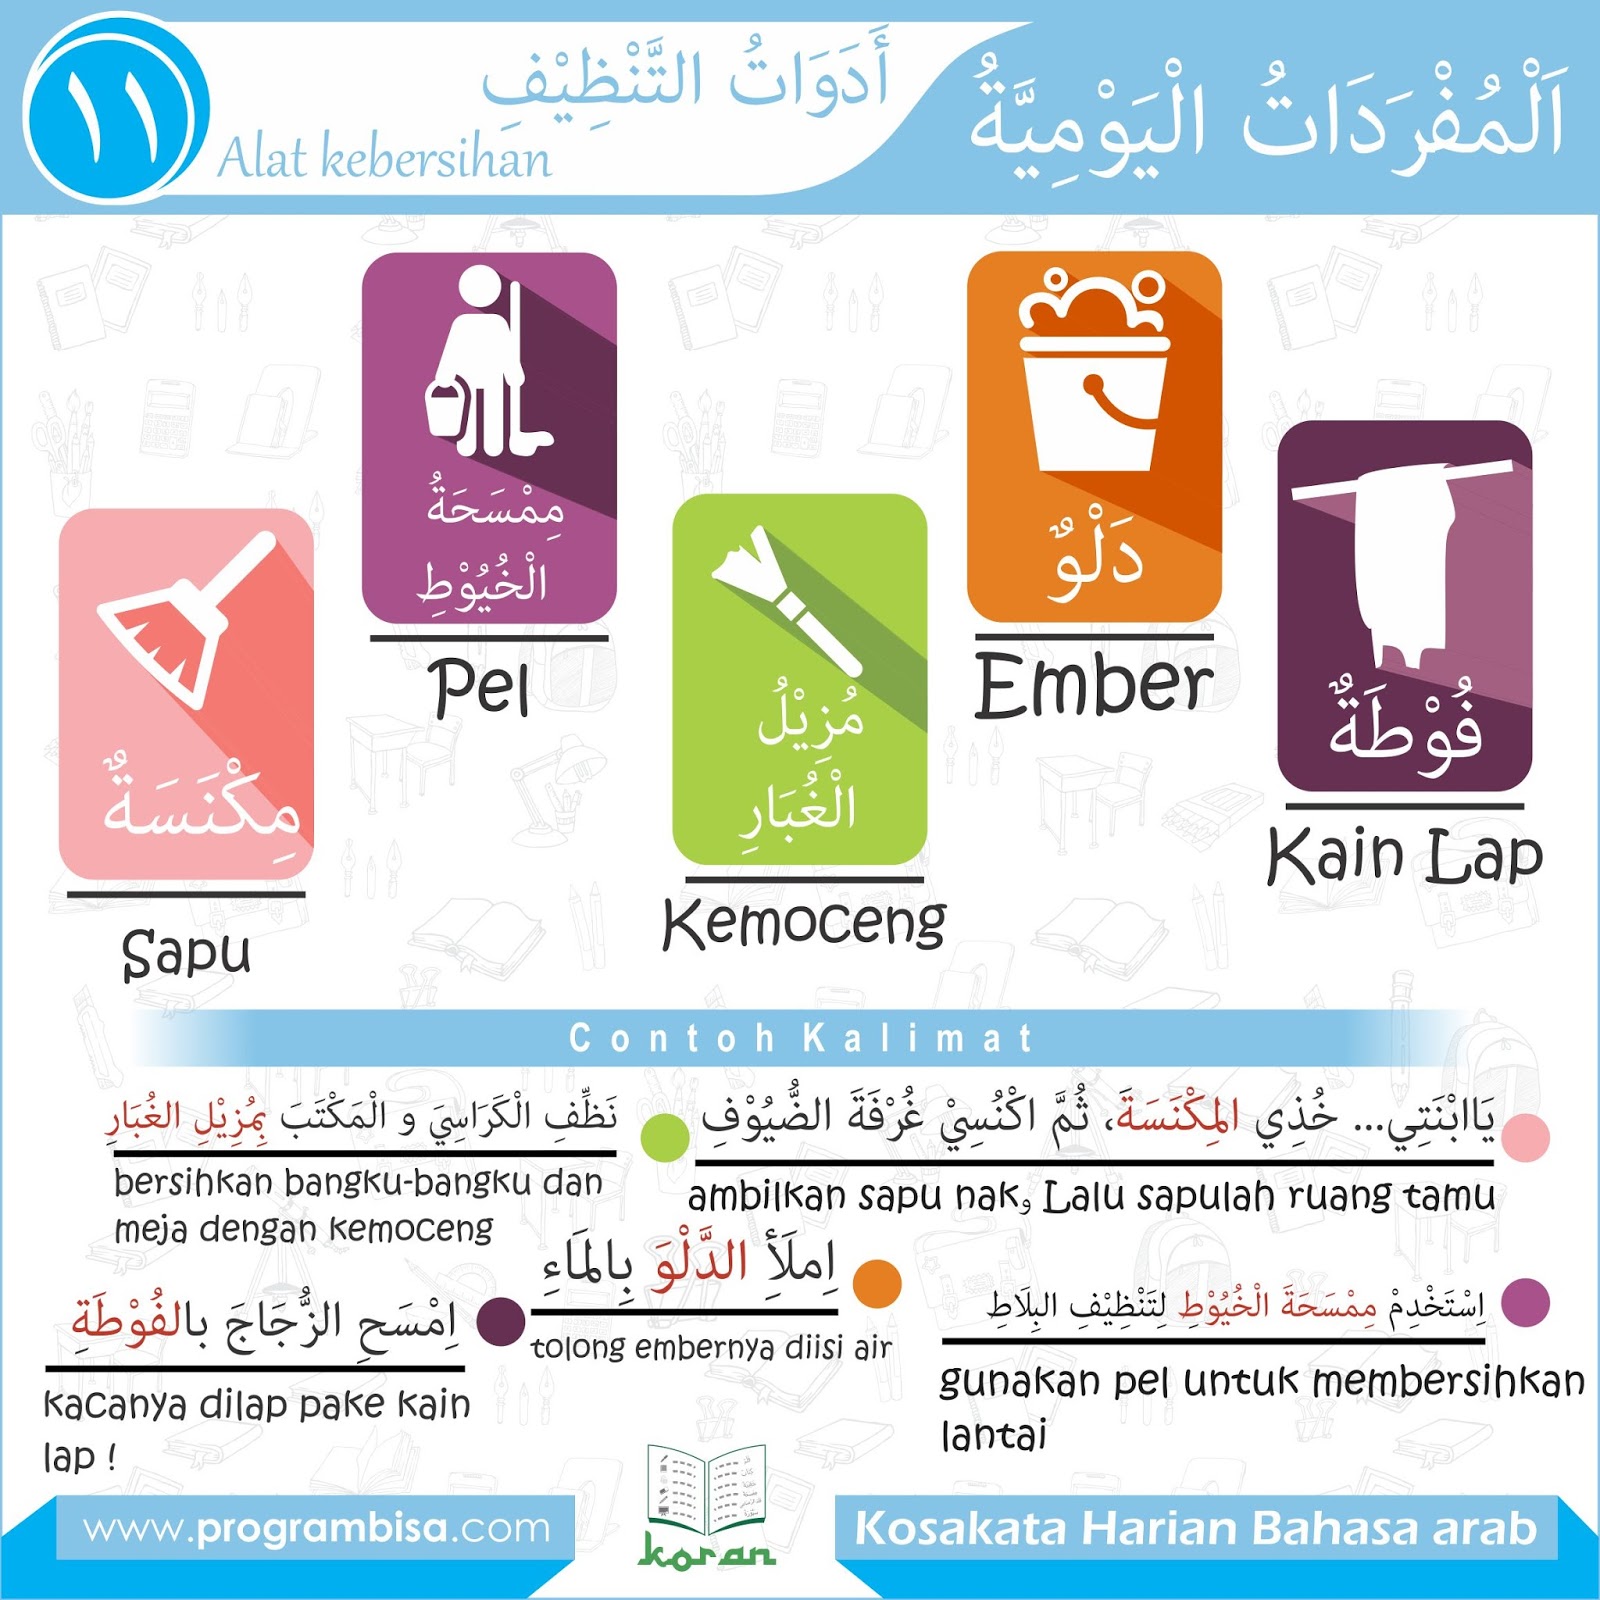  Kosakata  Bahasa  Arab  Seputar Dapur  Dan Alat  Kebersihan 